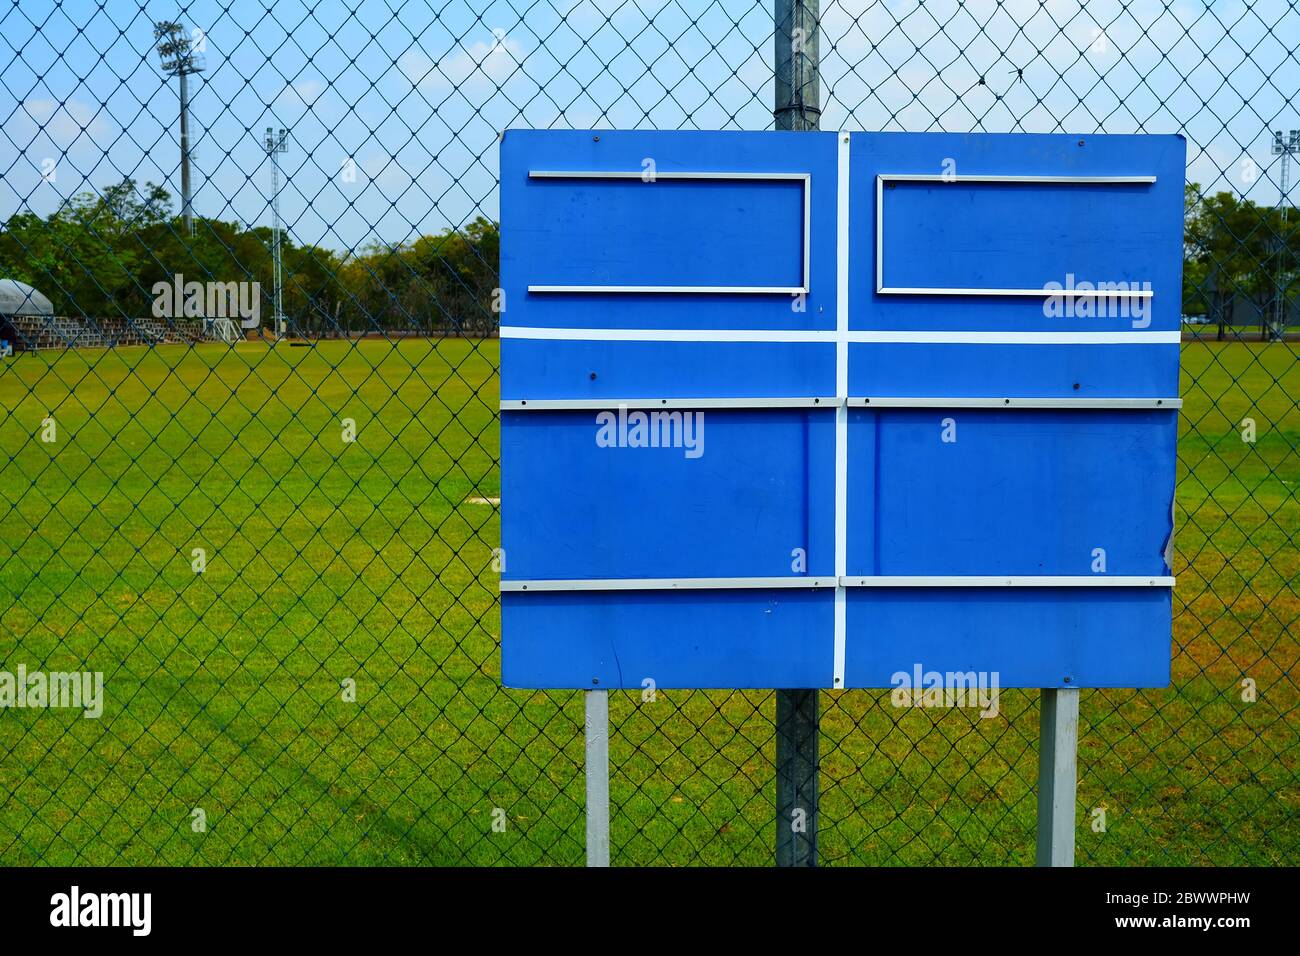 Blank Blue Wooden Soccer Scoreboard. Stock Photo